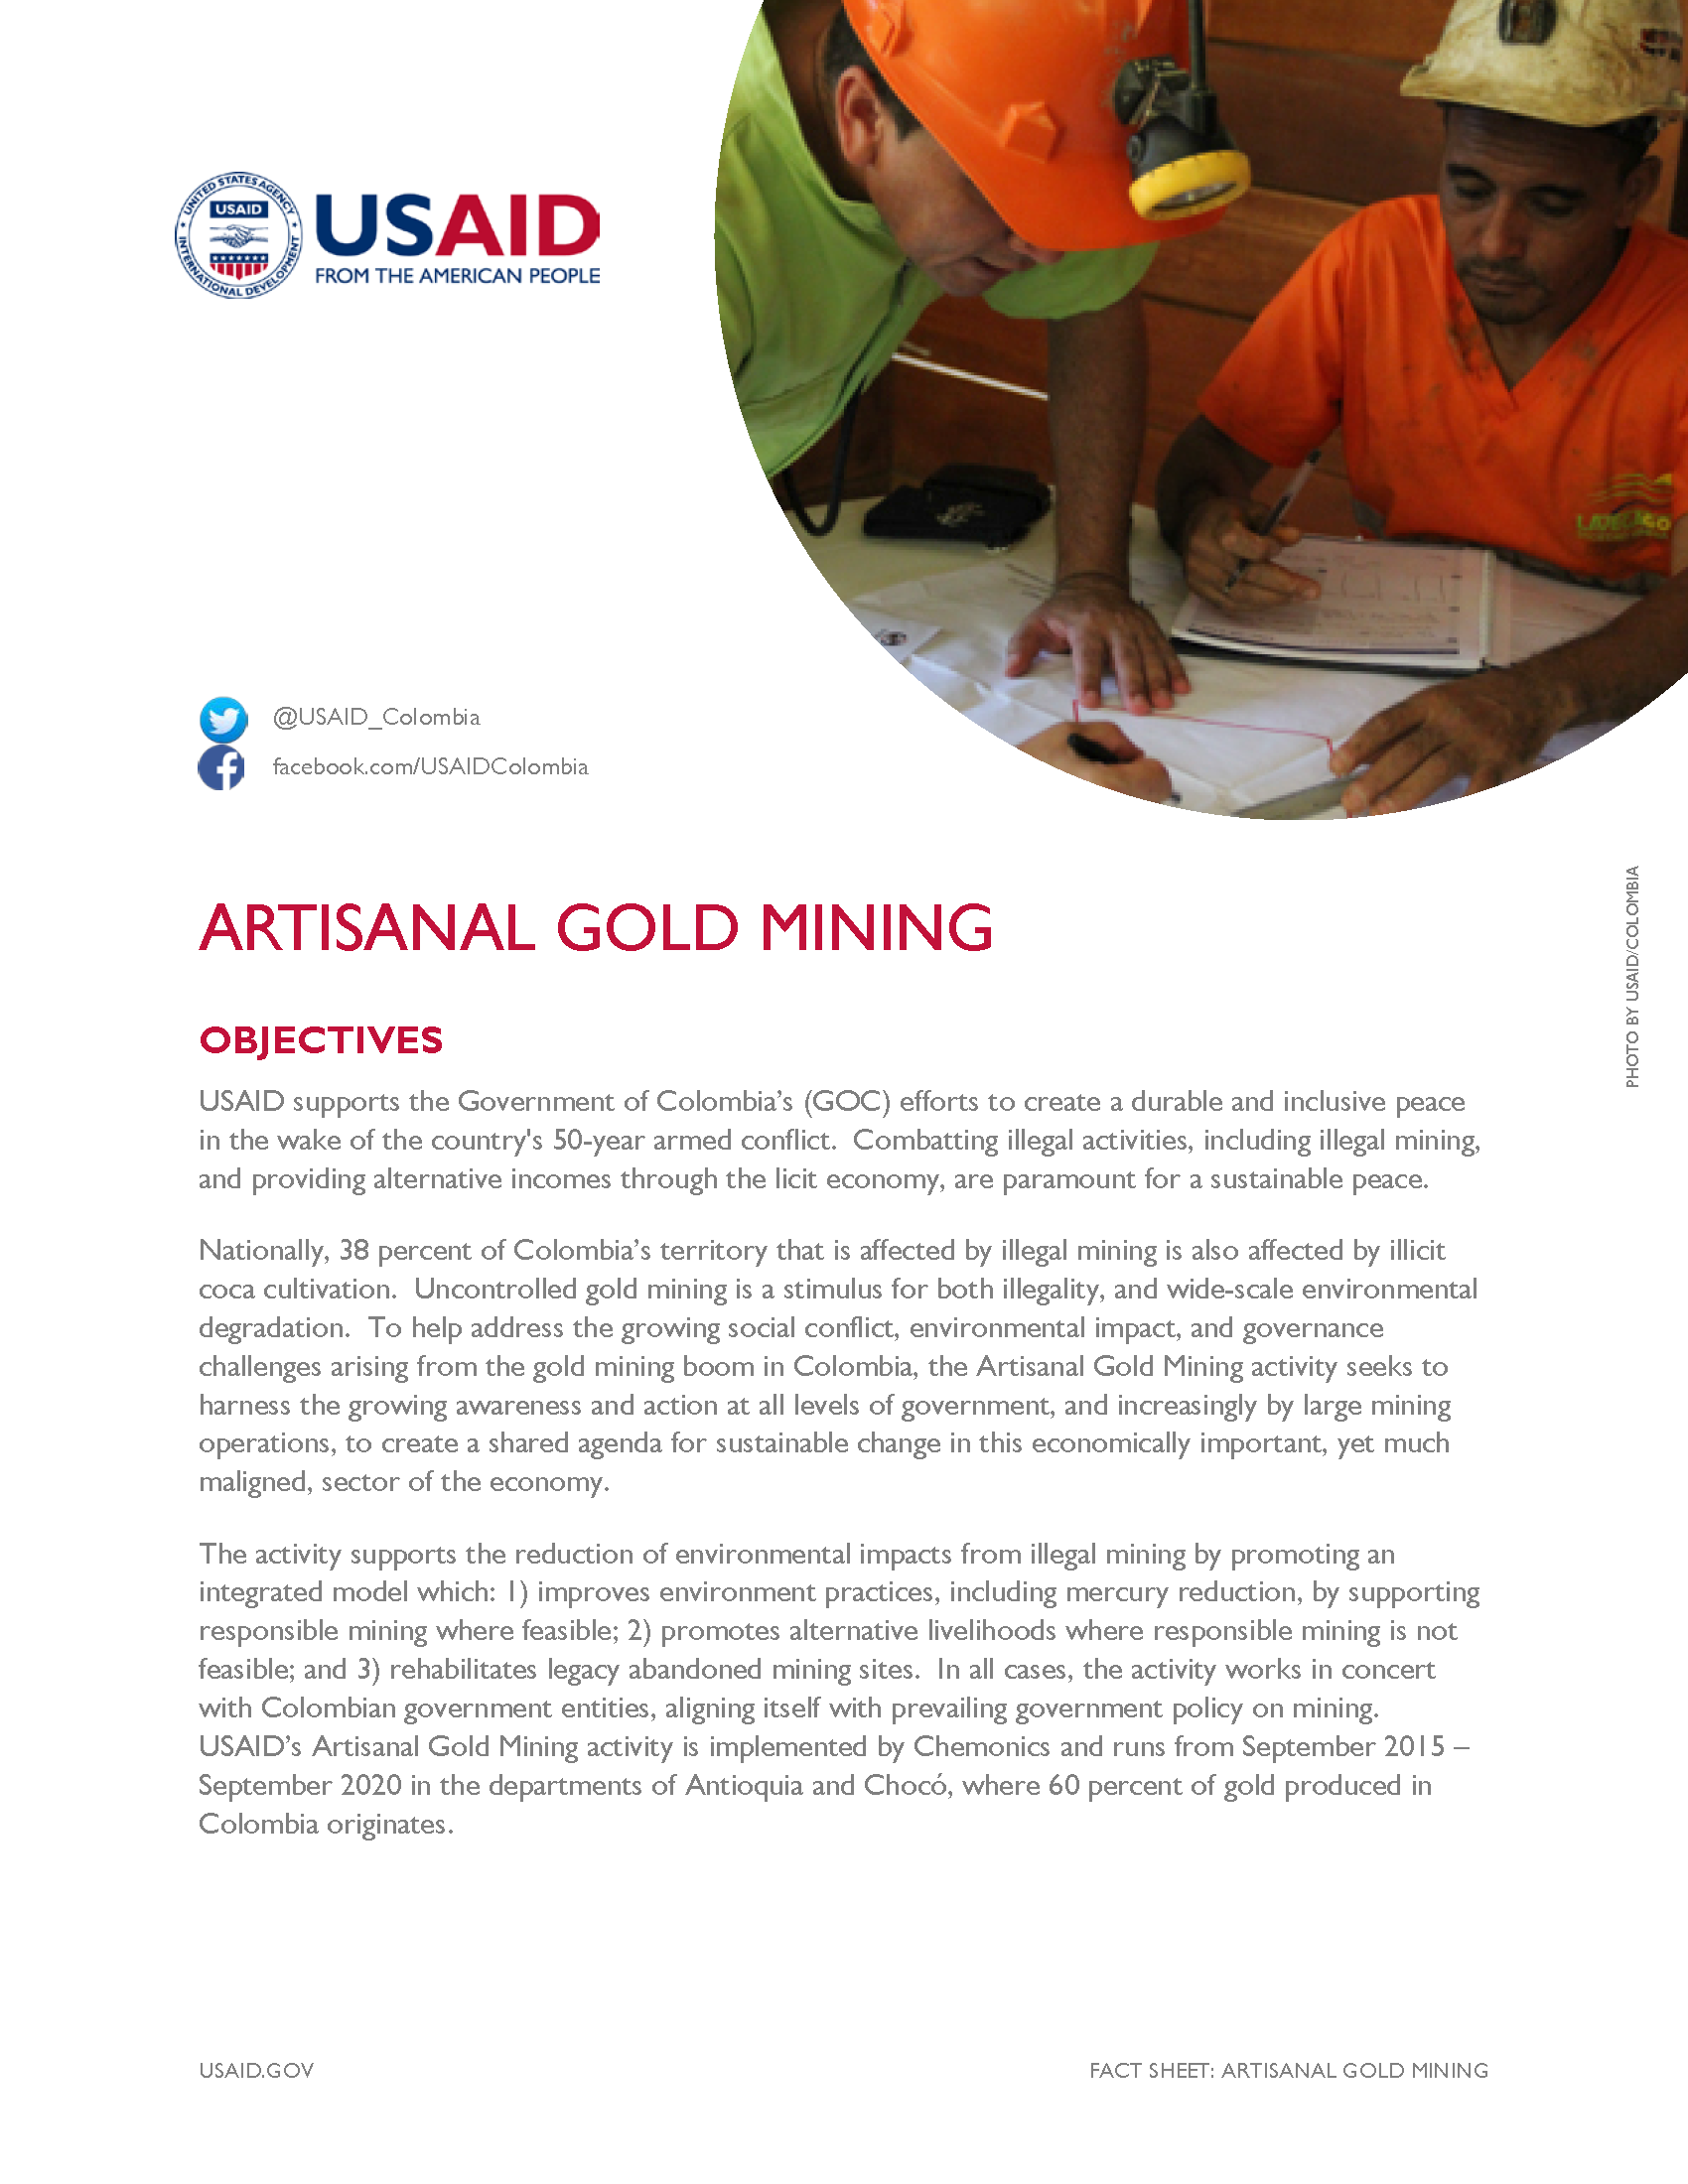 Artisanal Gold Mining Fact Sheet